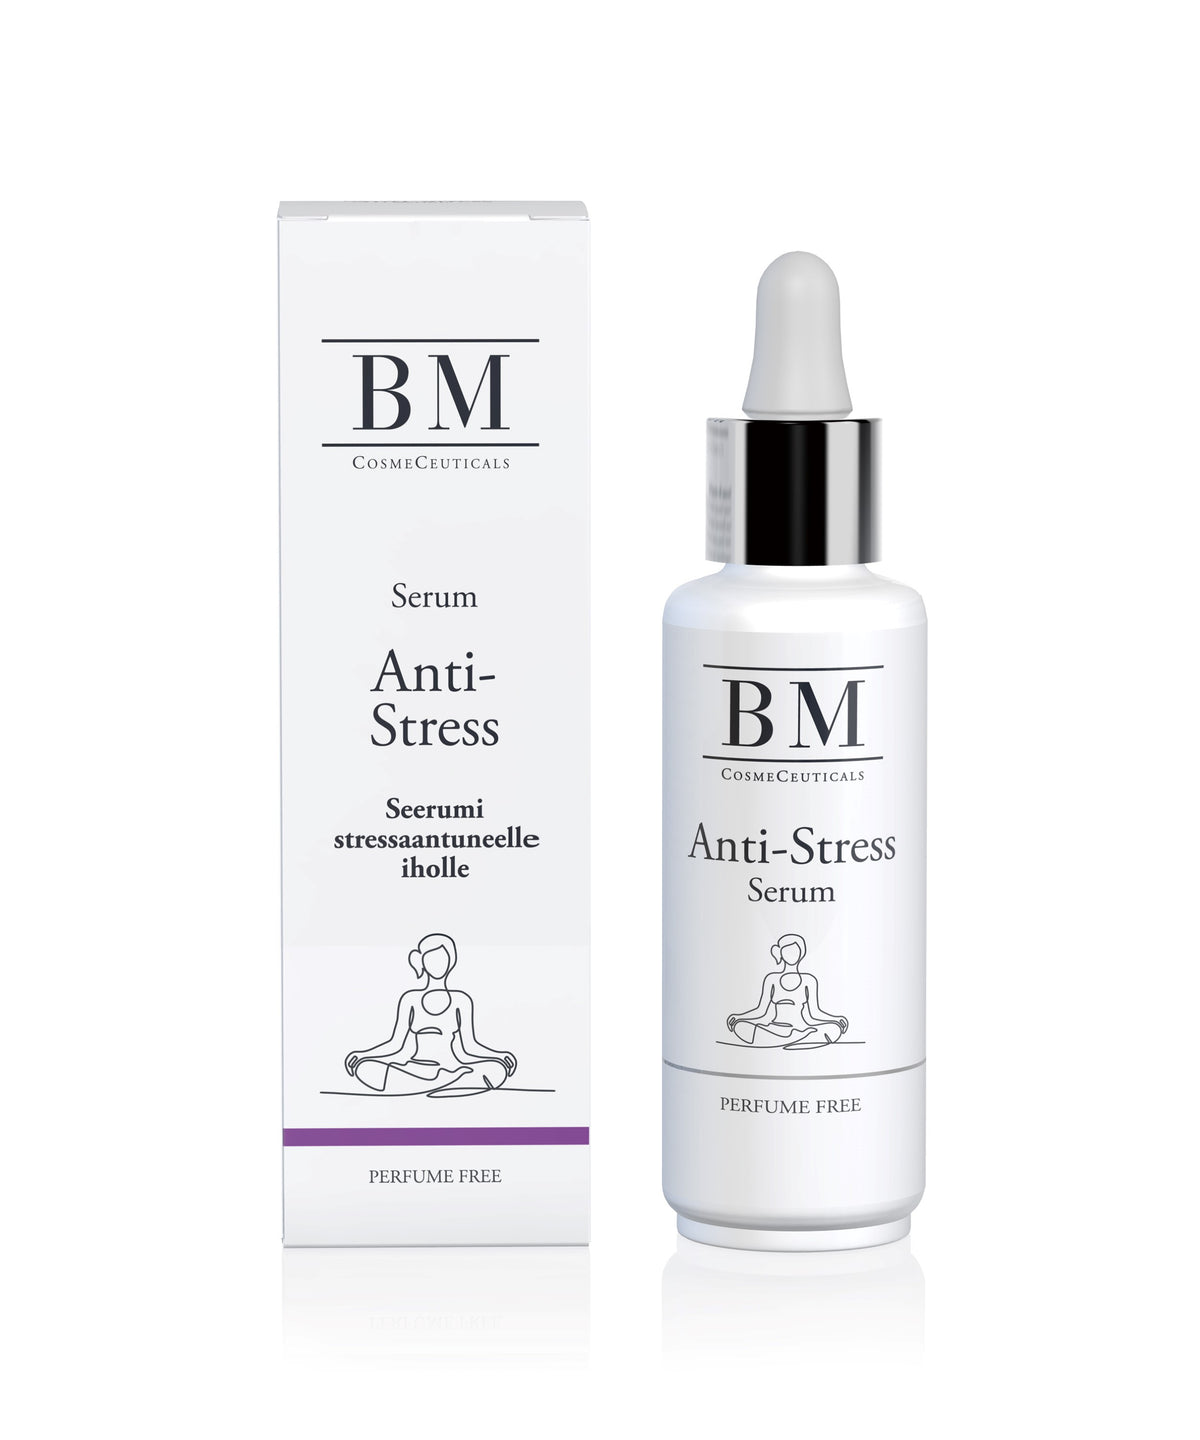 BM Anti-Stress Serum - Seerumi 30 ml